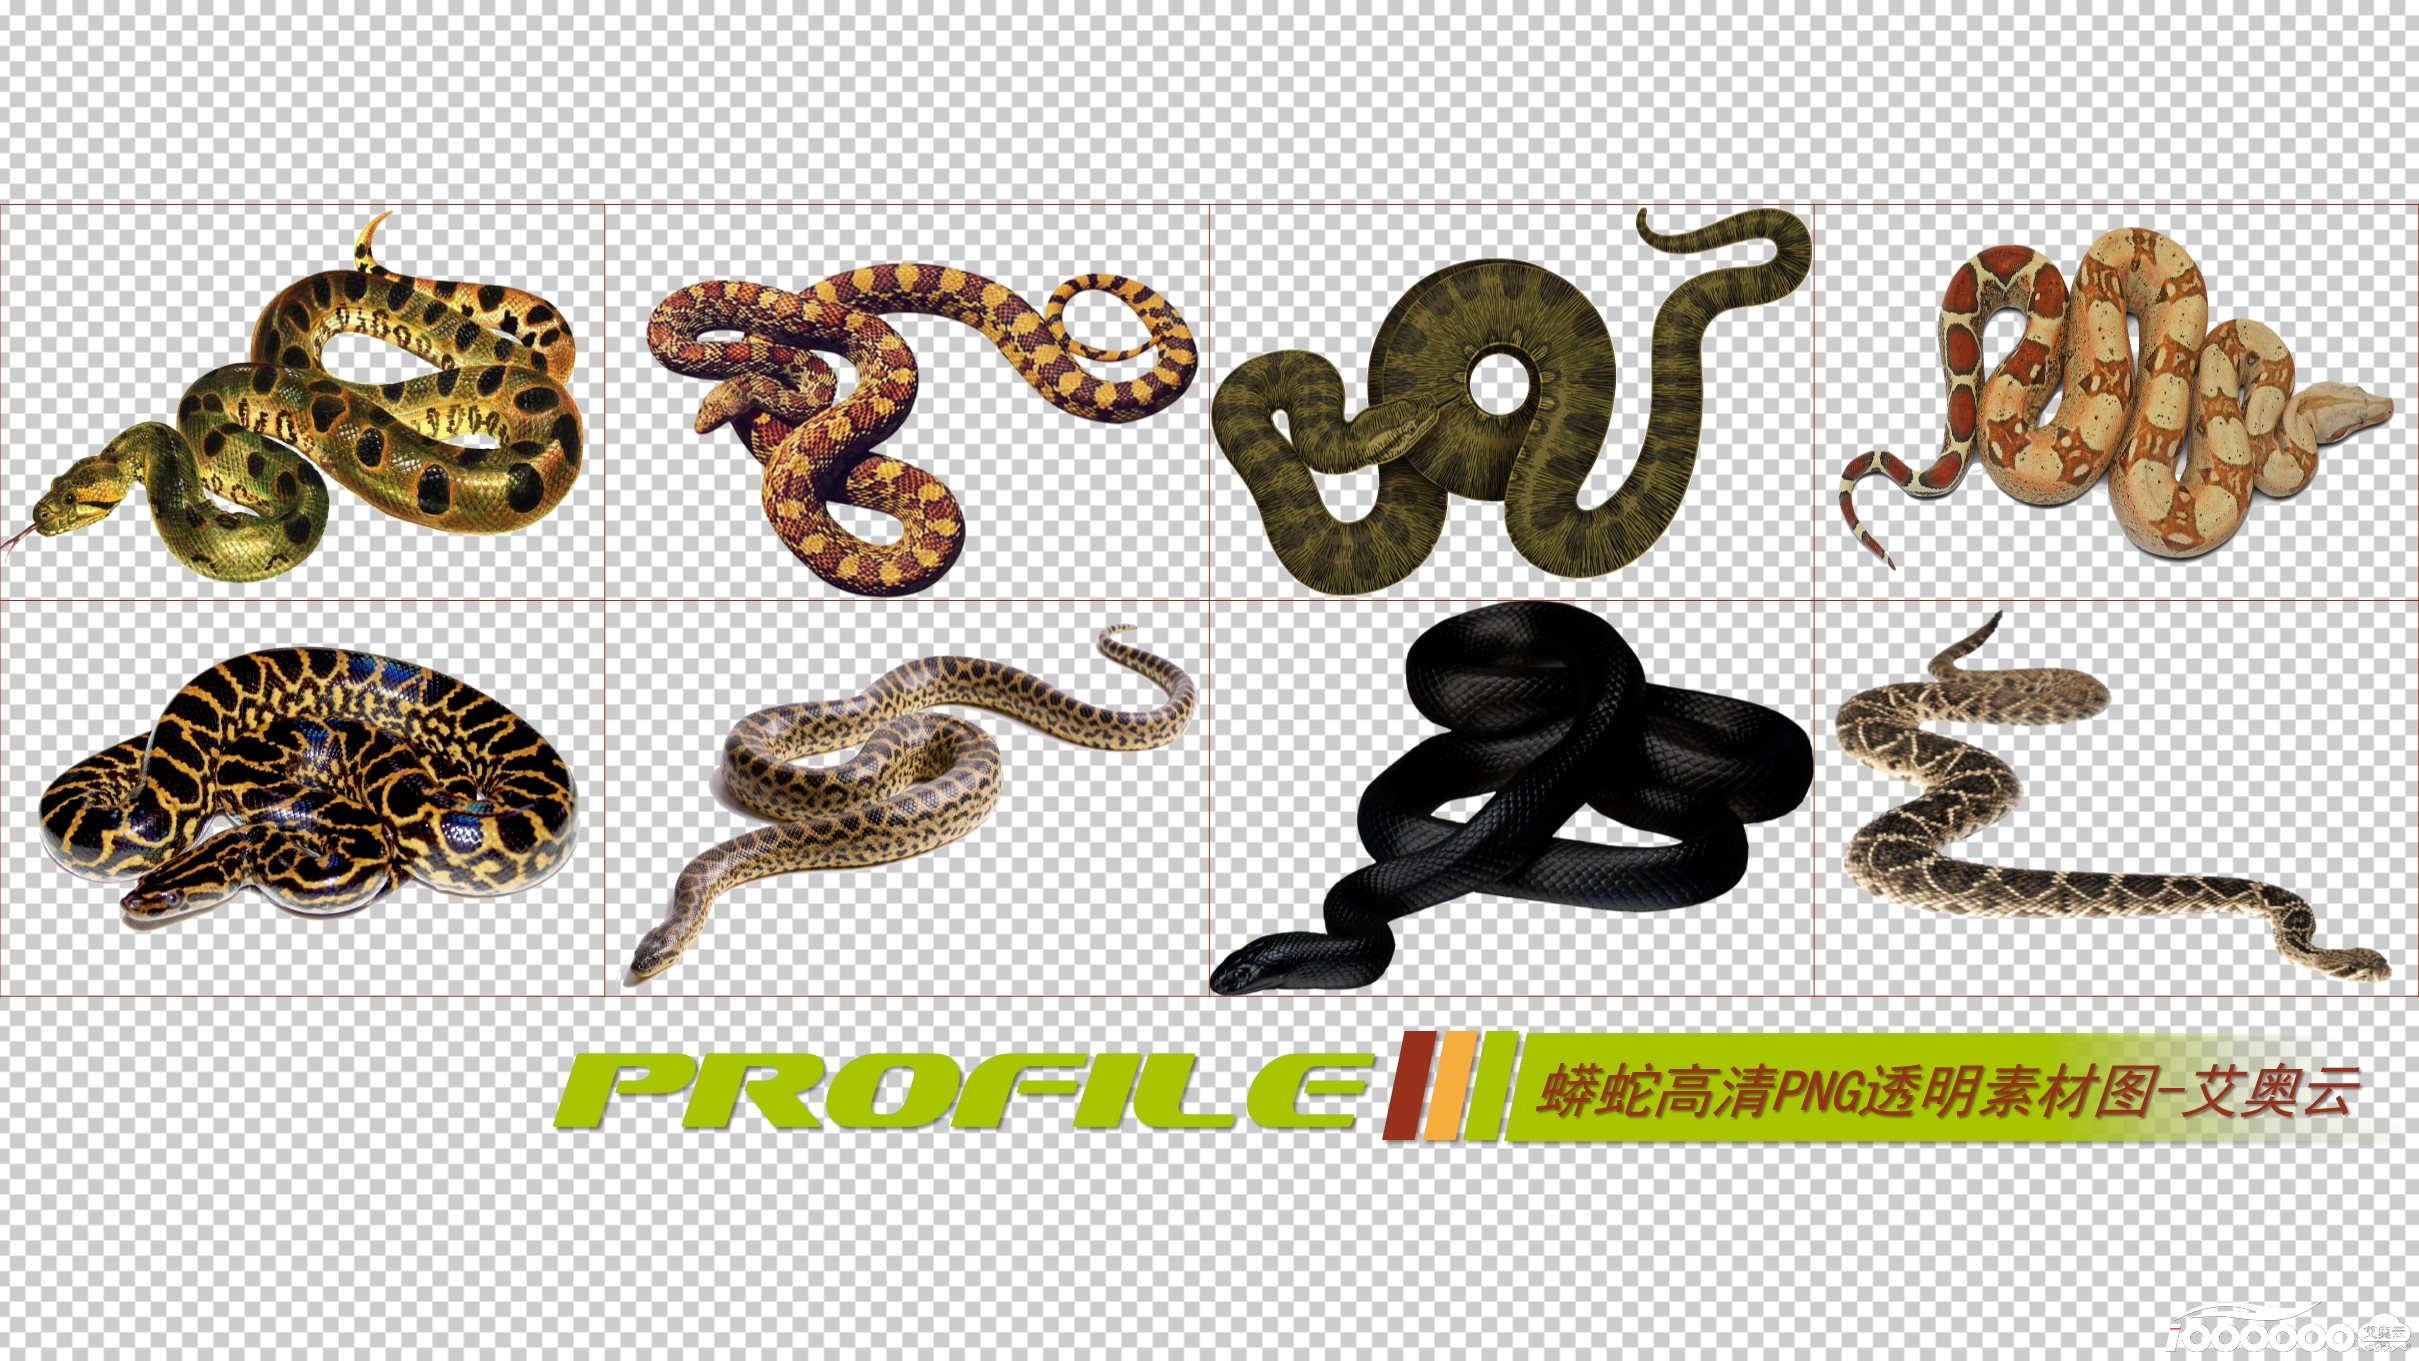 蟒蛇高清png透明图片图形素材打包免费下载 (1).JPG